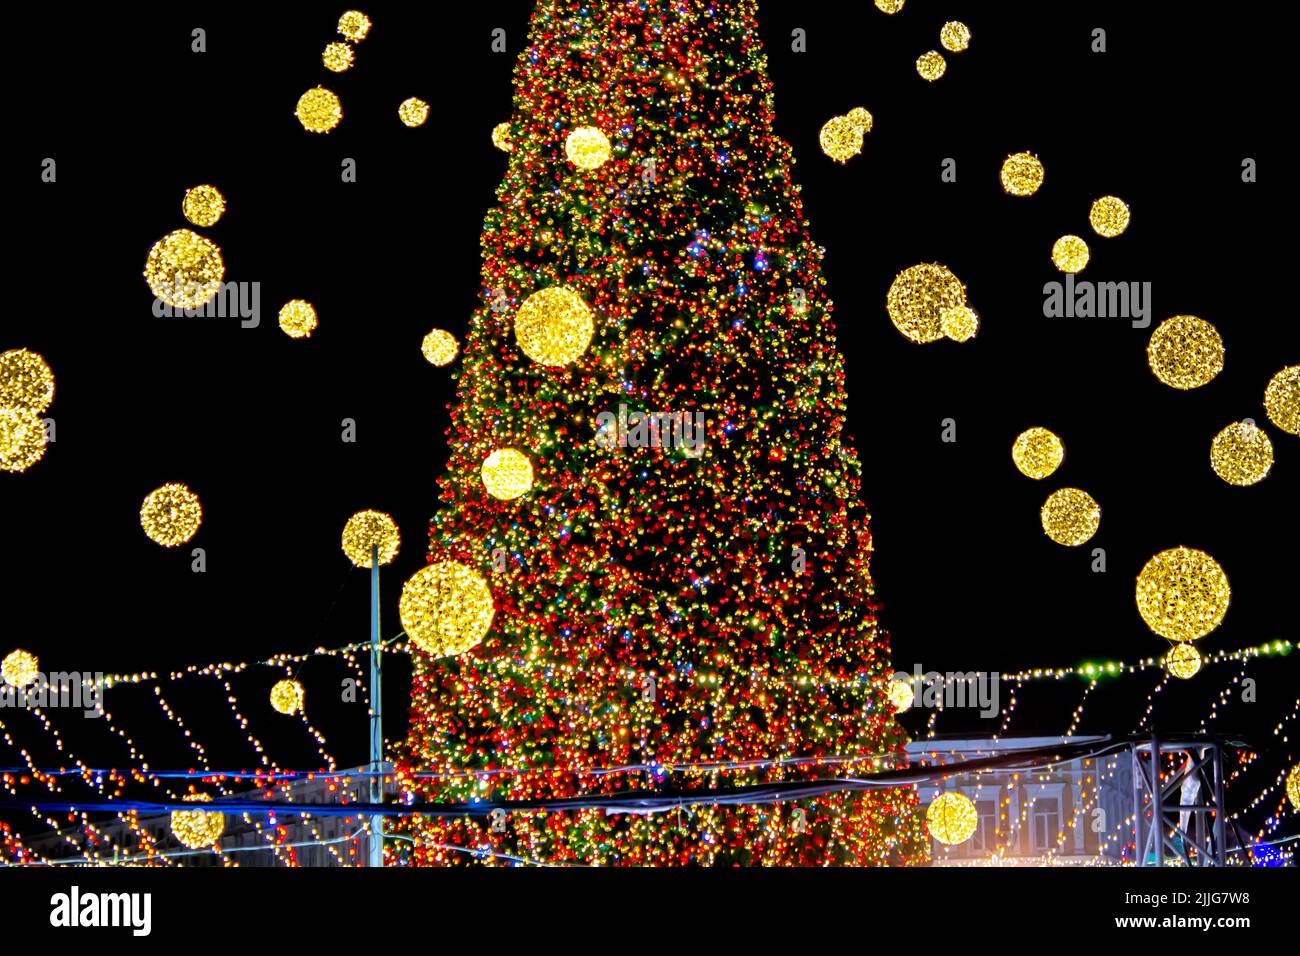 Magnifique arbre de Noël et arbre du nouvel an décoré de guirlandes et lumières multicolores la nuit. Arbre de Noël avec lumières clignotantes. Nouvel an et vacances de Noël Banque D'Images